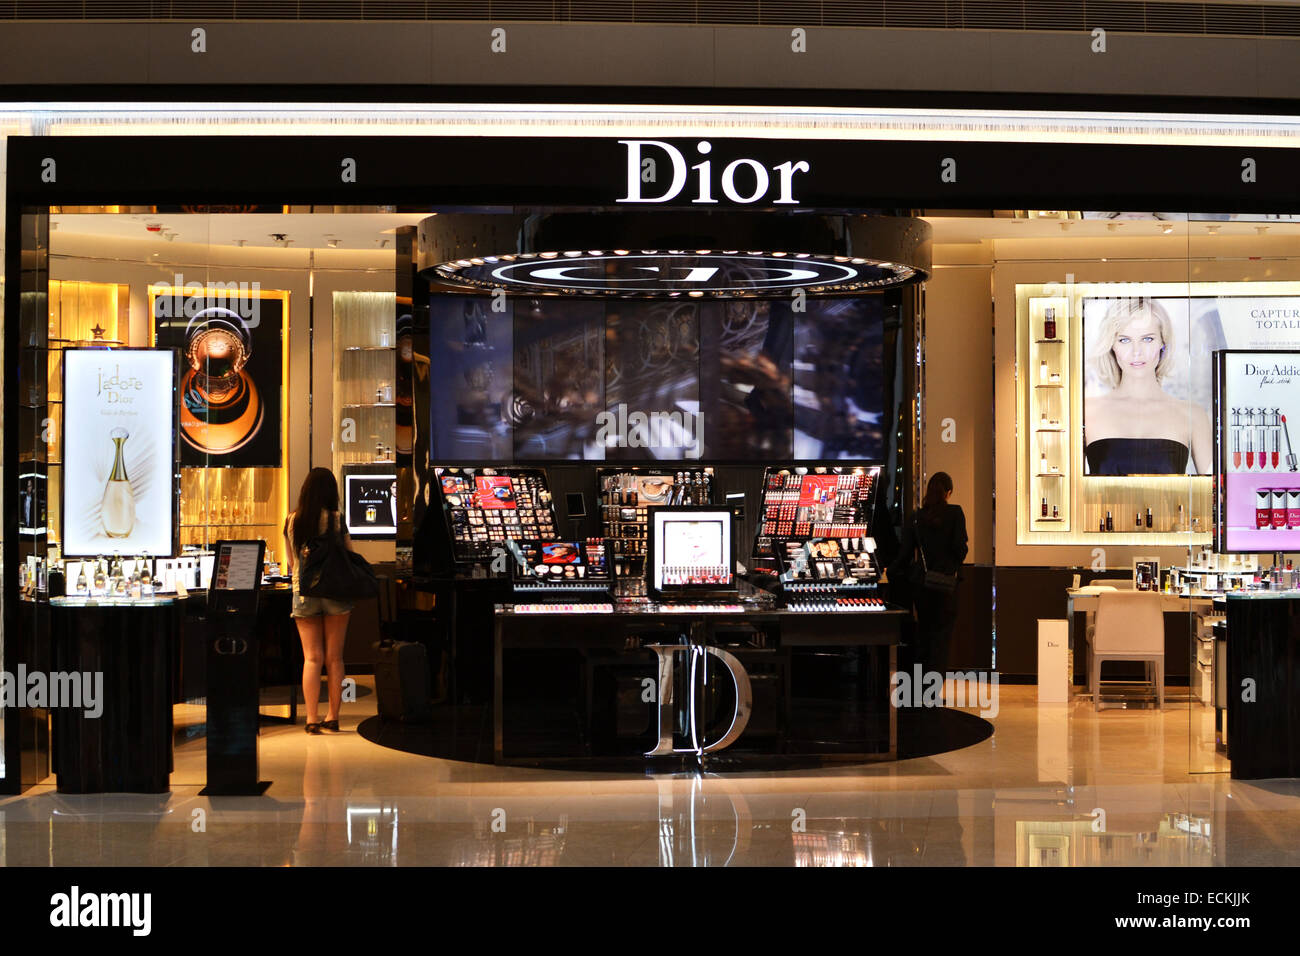 dior perfume shop